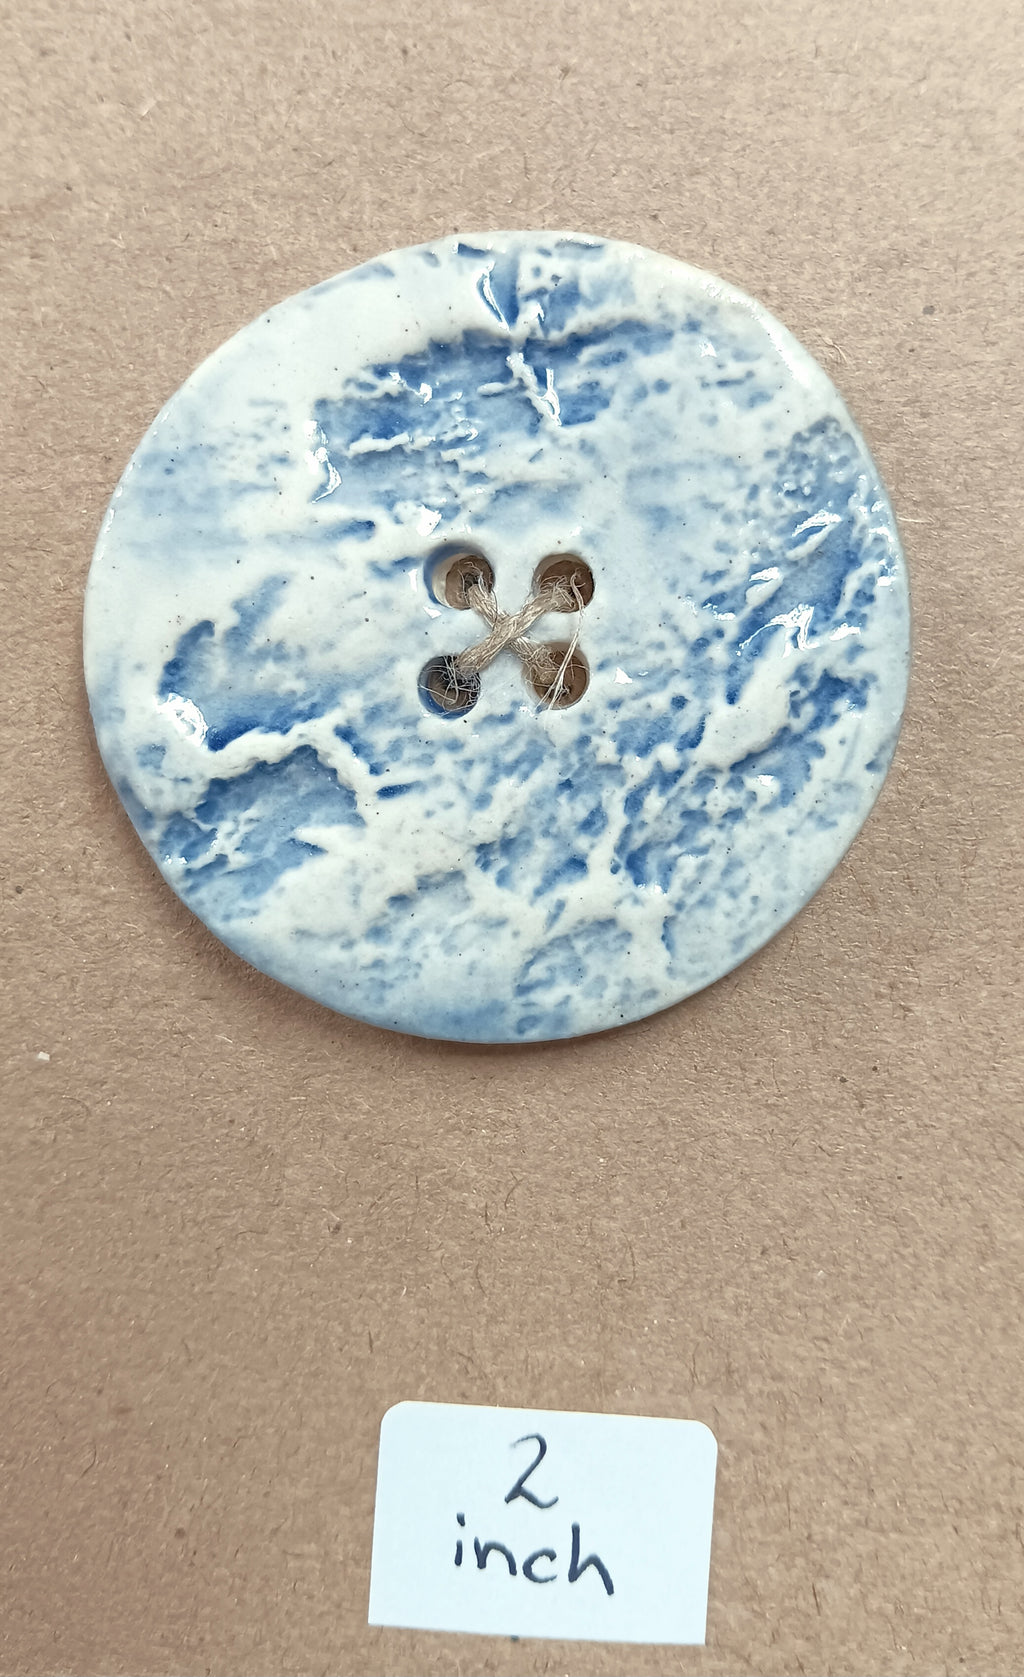 Ceramic Button 33